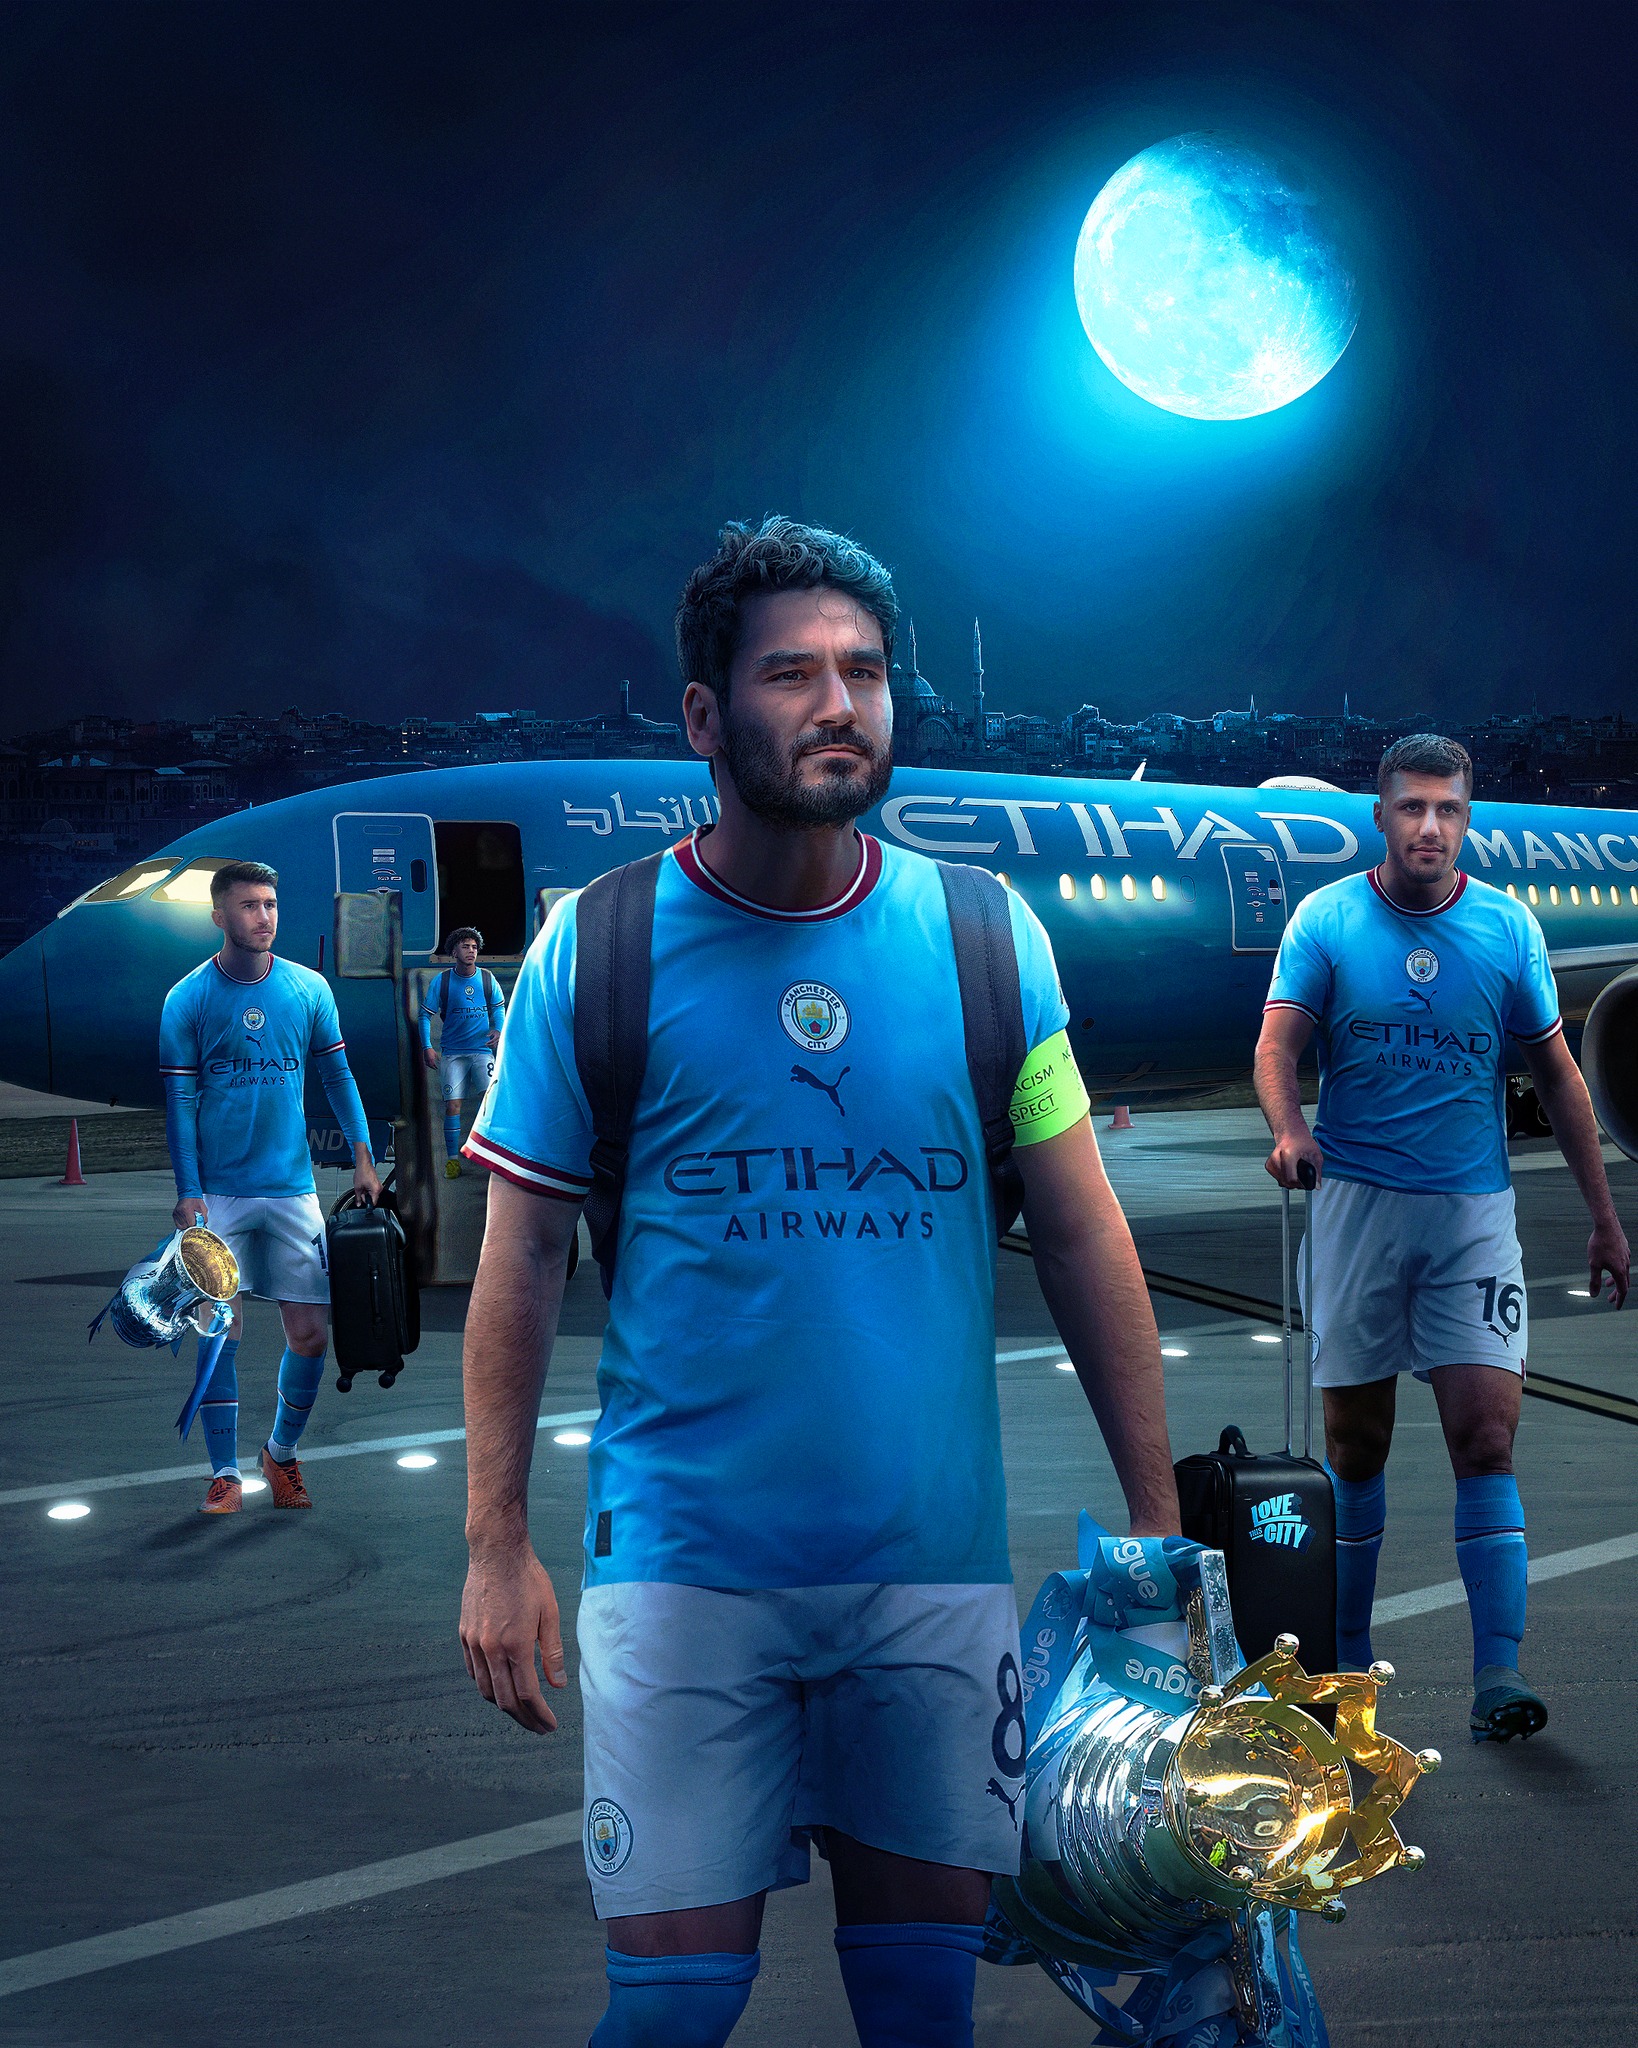 Promo Manchester city campeón con Etihad airways como patrocinador